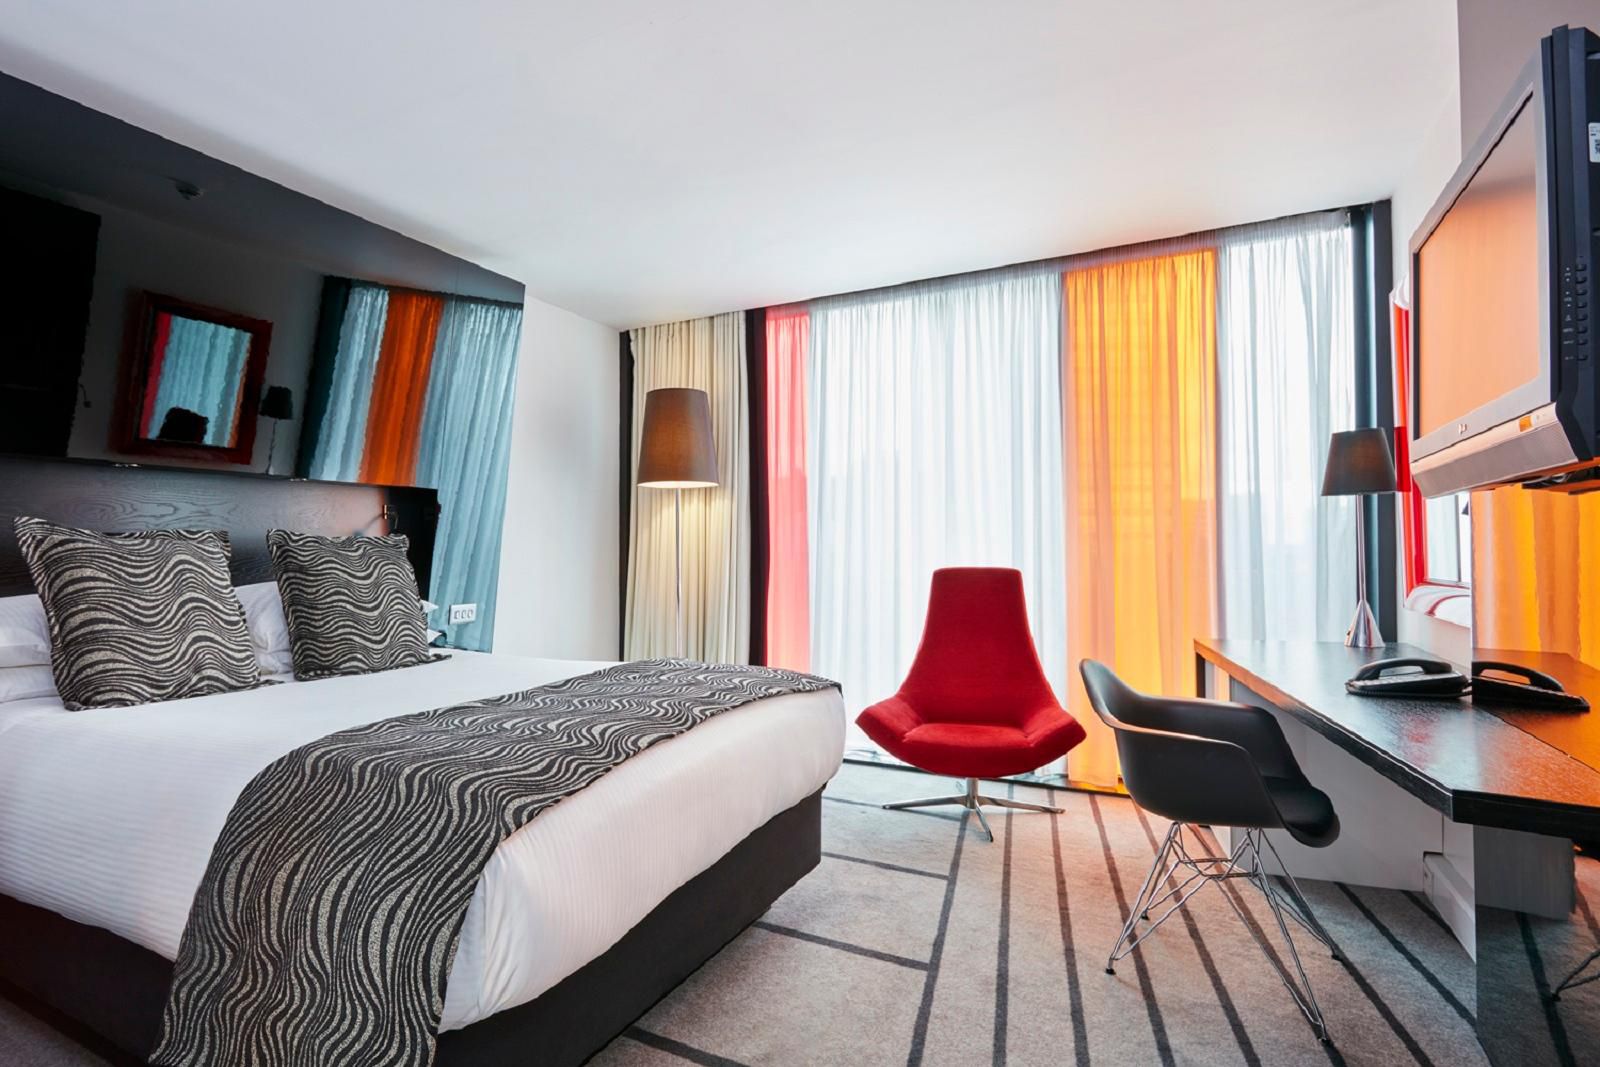 Standard double room – one queen bed